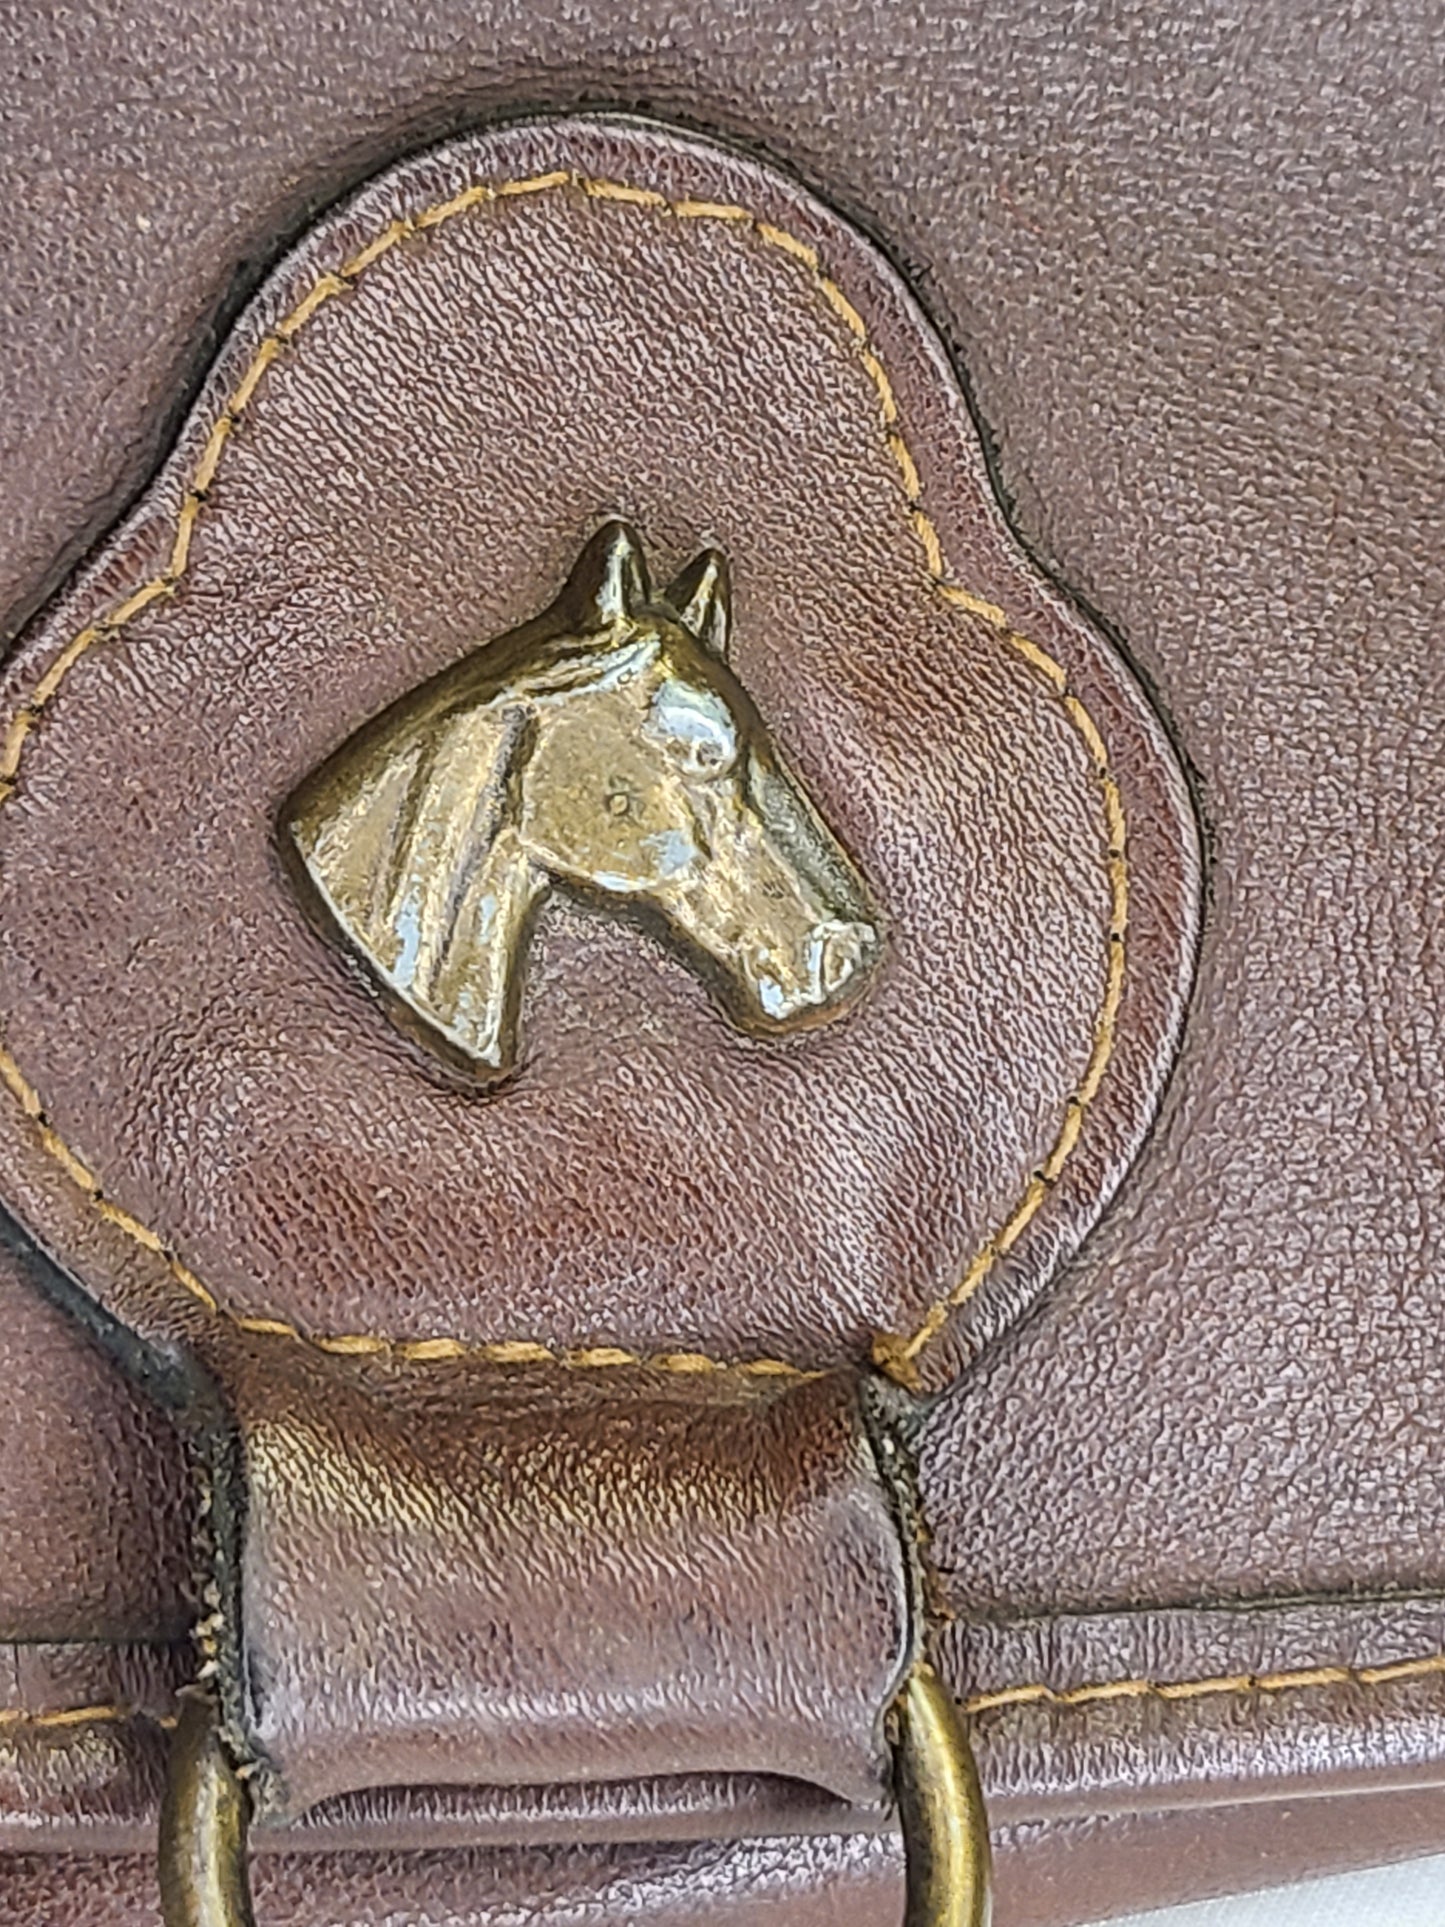 Vintage Leather Shoulder Bag With Horse Emblem